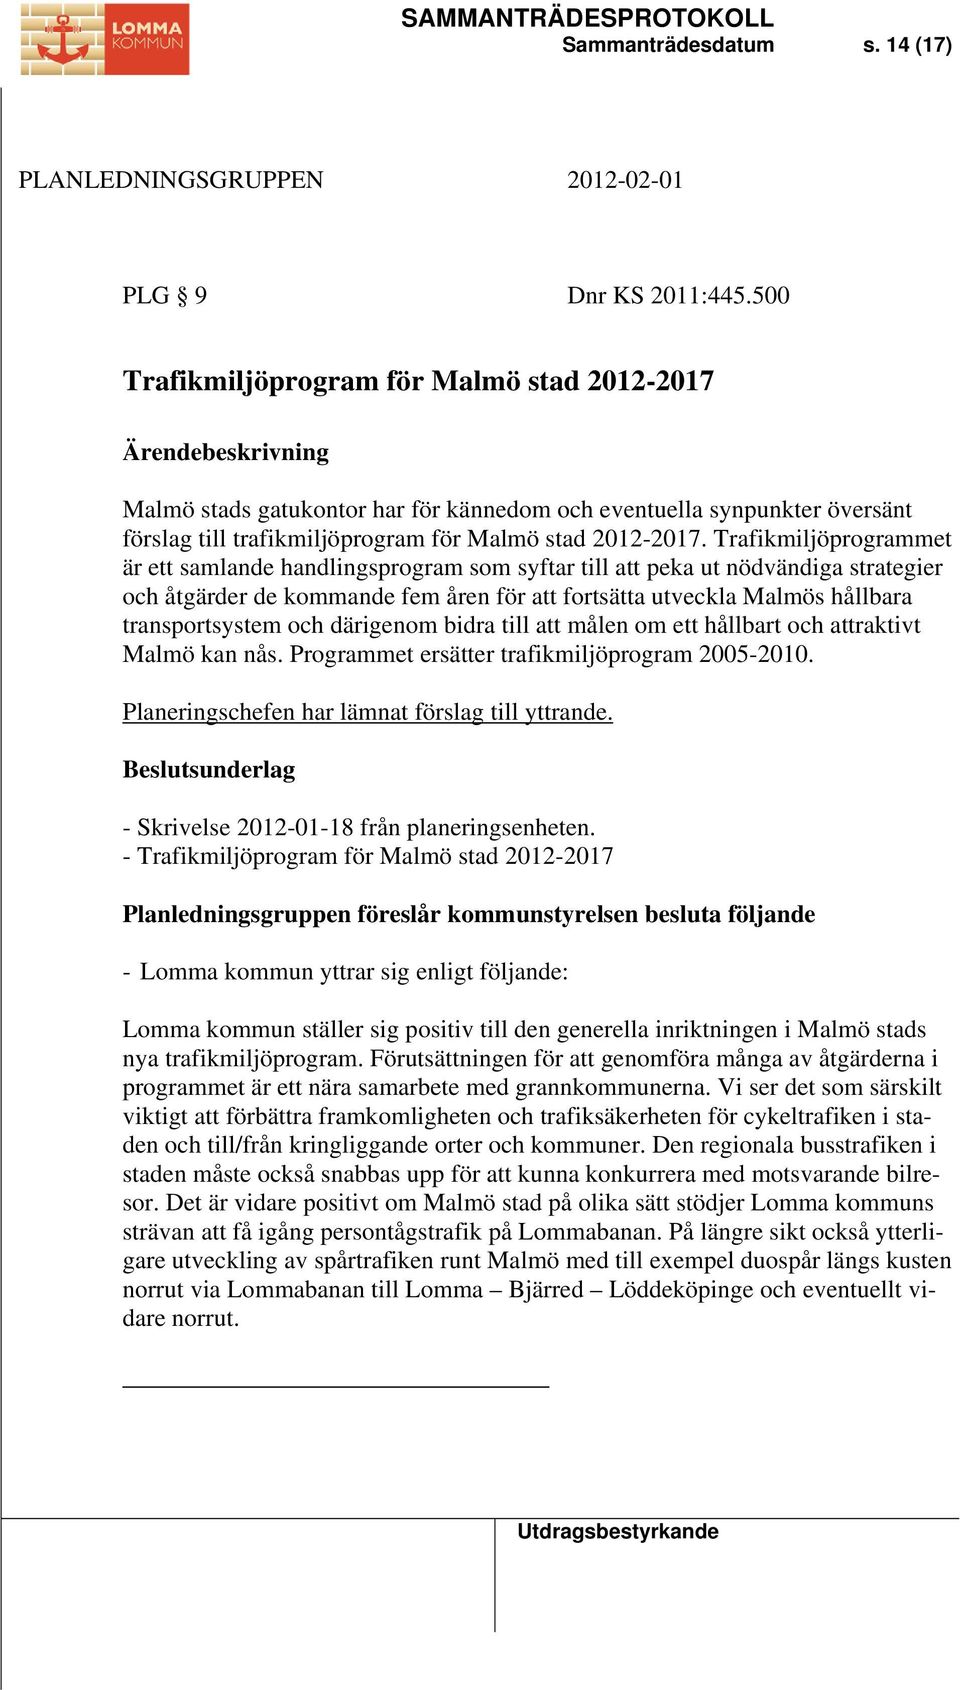 Trafikmiljöprogrammet är ett samlande handlingsprogram som syftar till att peka ut nödvändiga strategier och åtgärder de kommande fem åren för att fortsätta utveckla Malmös hållbara transportsystem